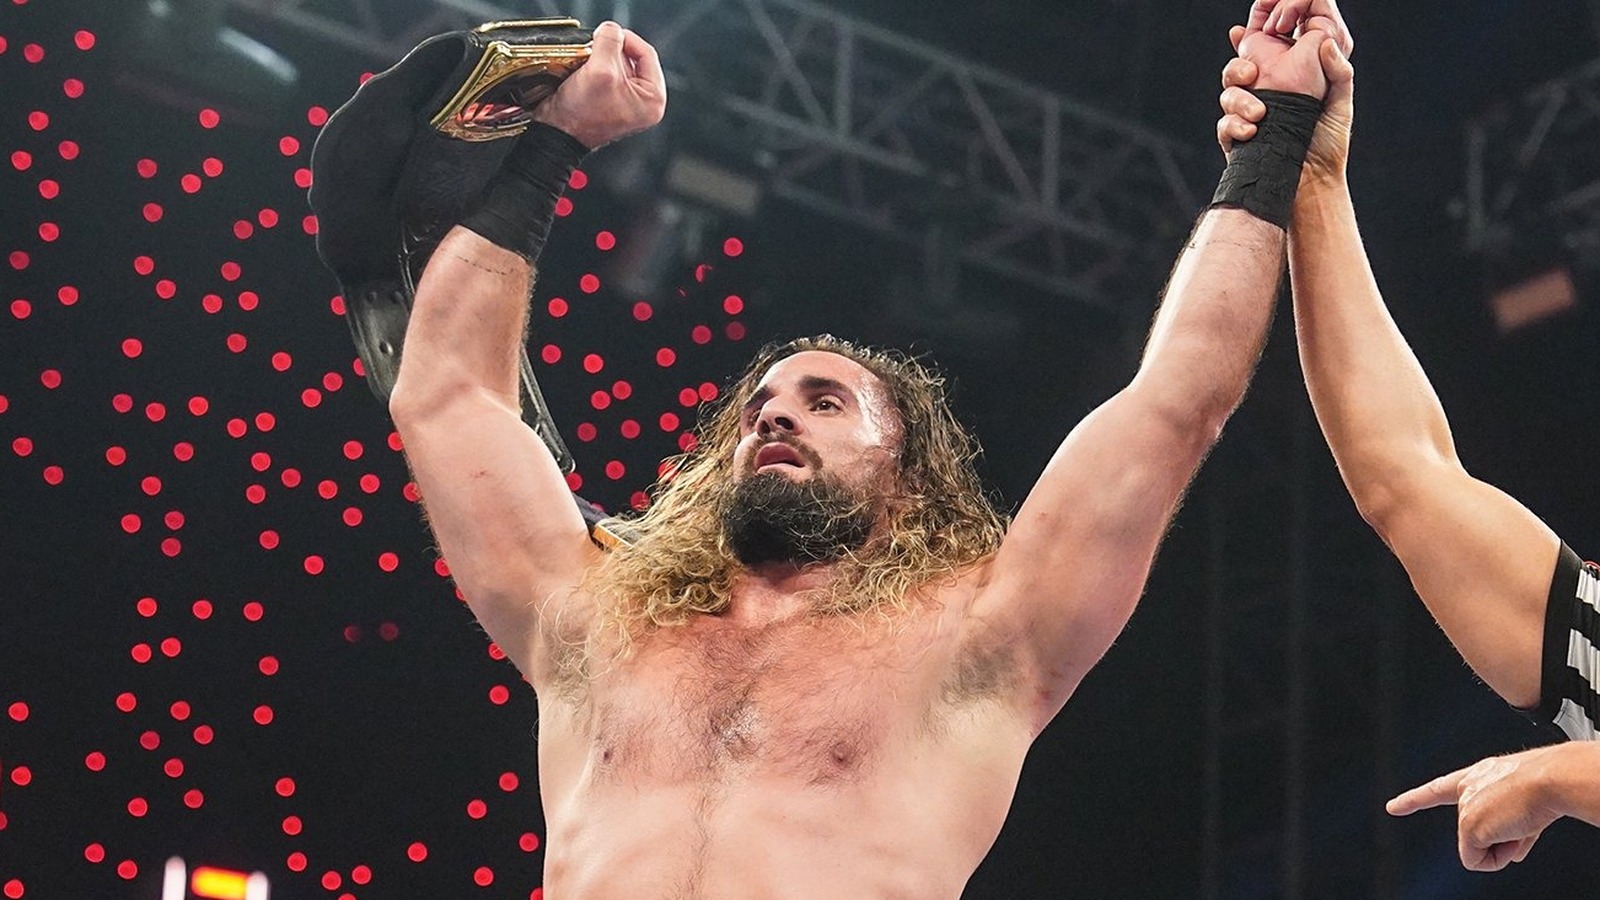 La estrella de la WWE, Seth Rollins, ofrece actualización sobre lesiones de rodilla